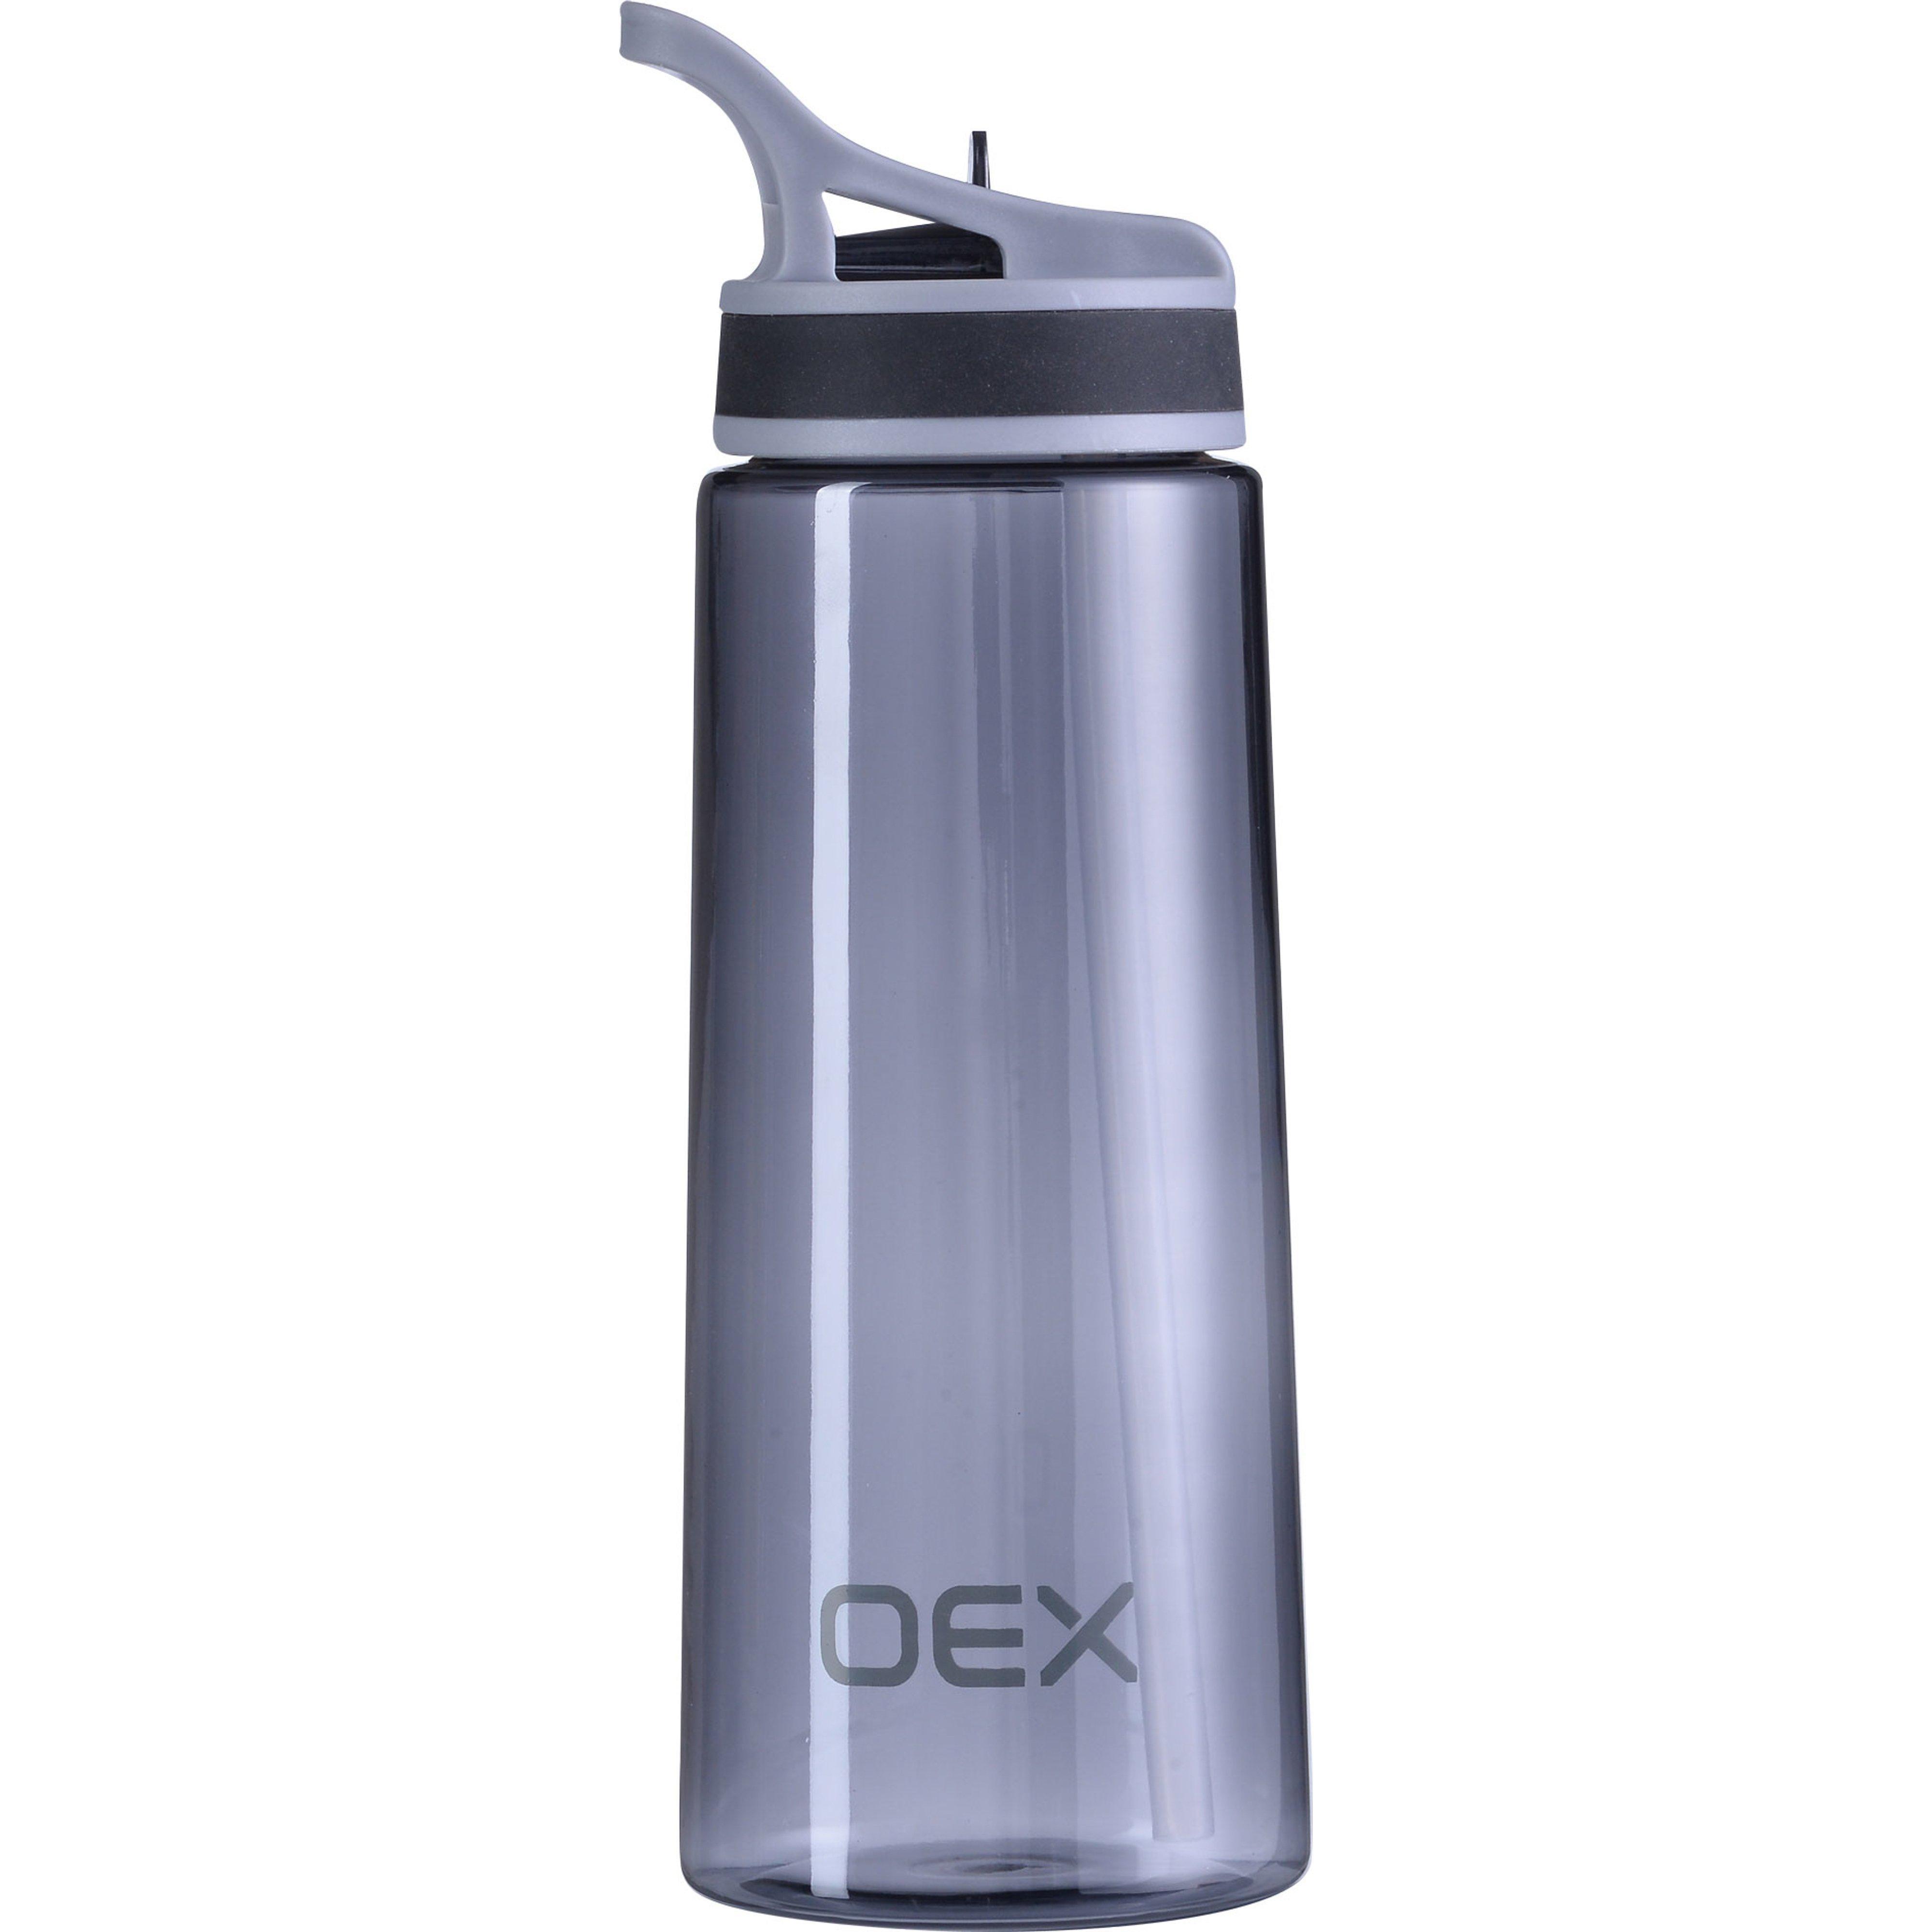 OEX 700ML Drink Thru Bottle Review